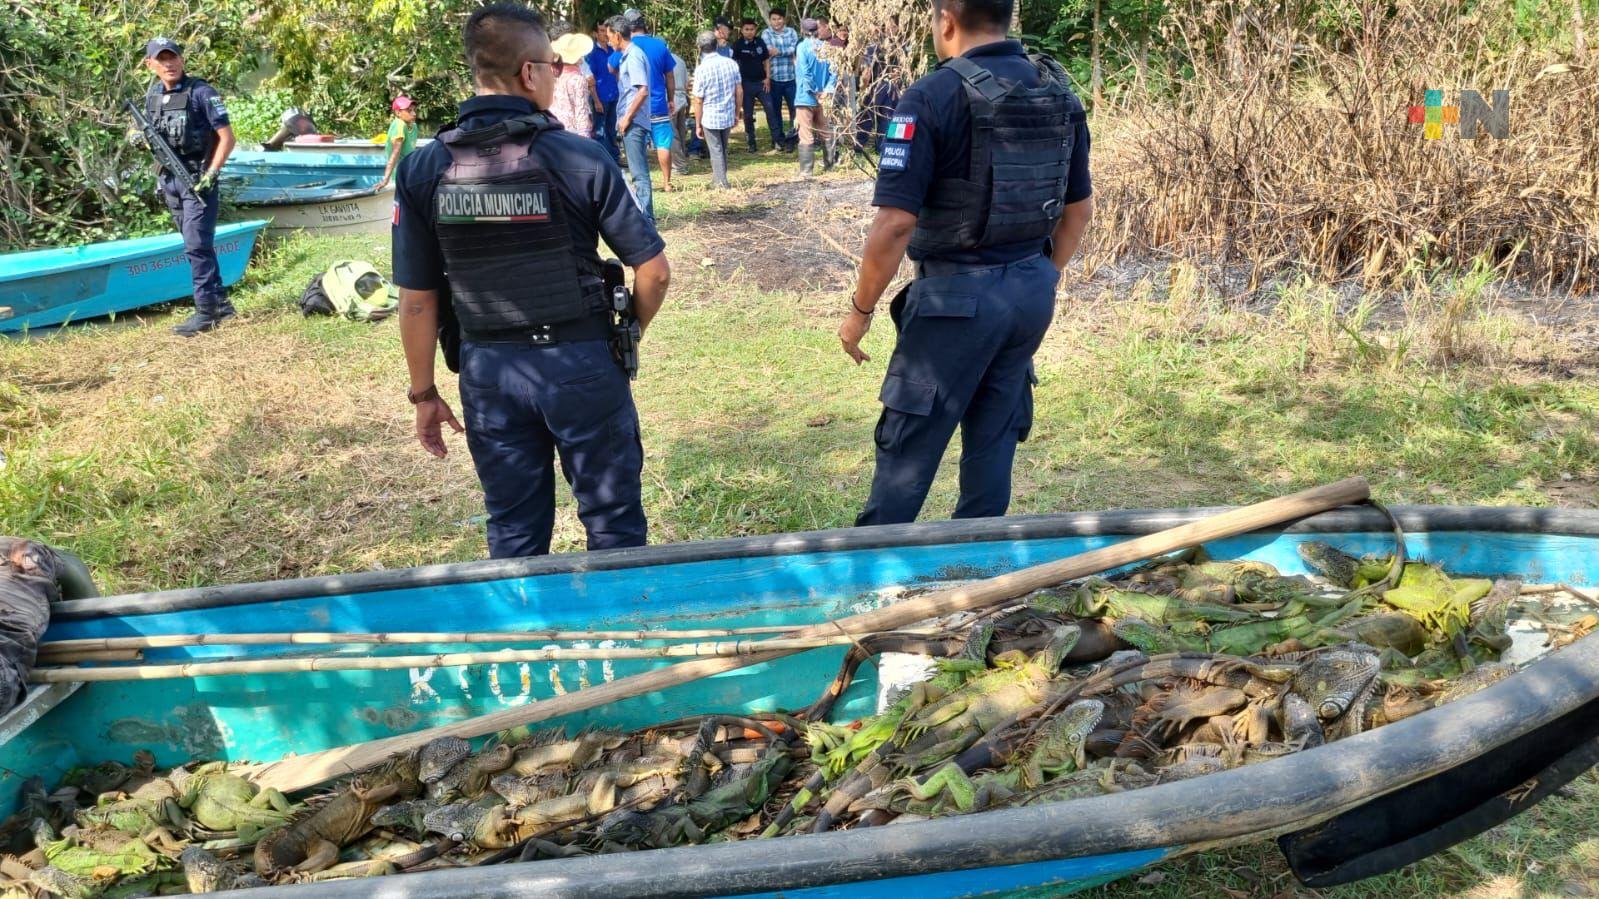 Policía estatal rescata 51 iguanas verdes en Minatitlán capturadas ilegalmente